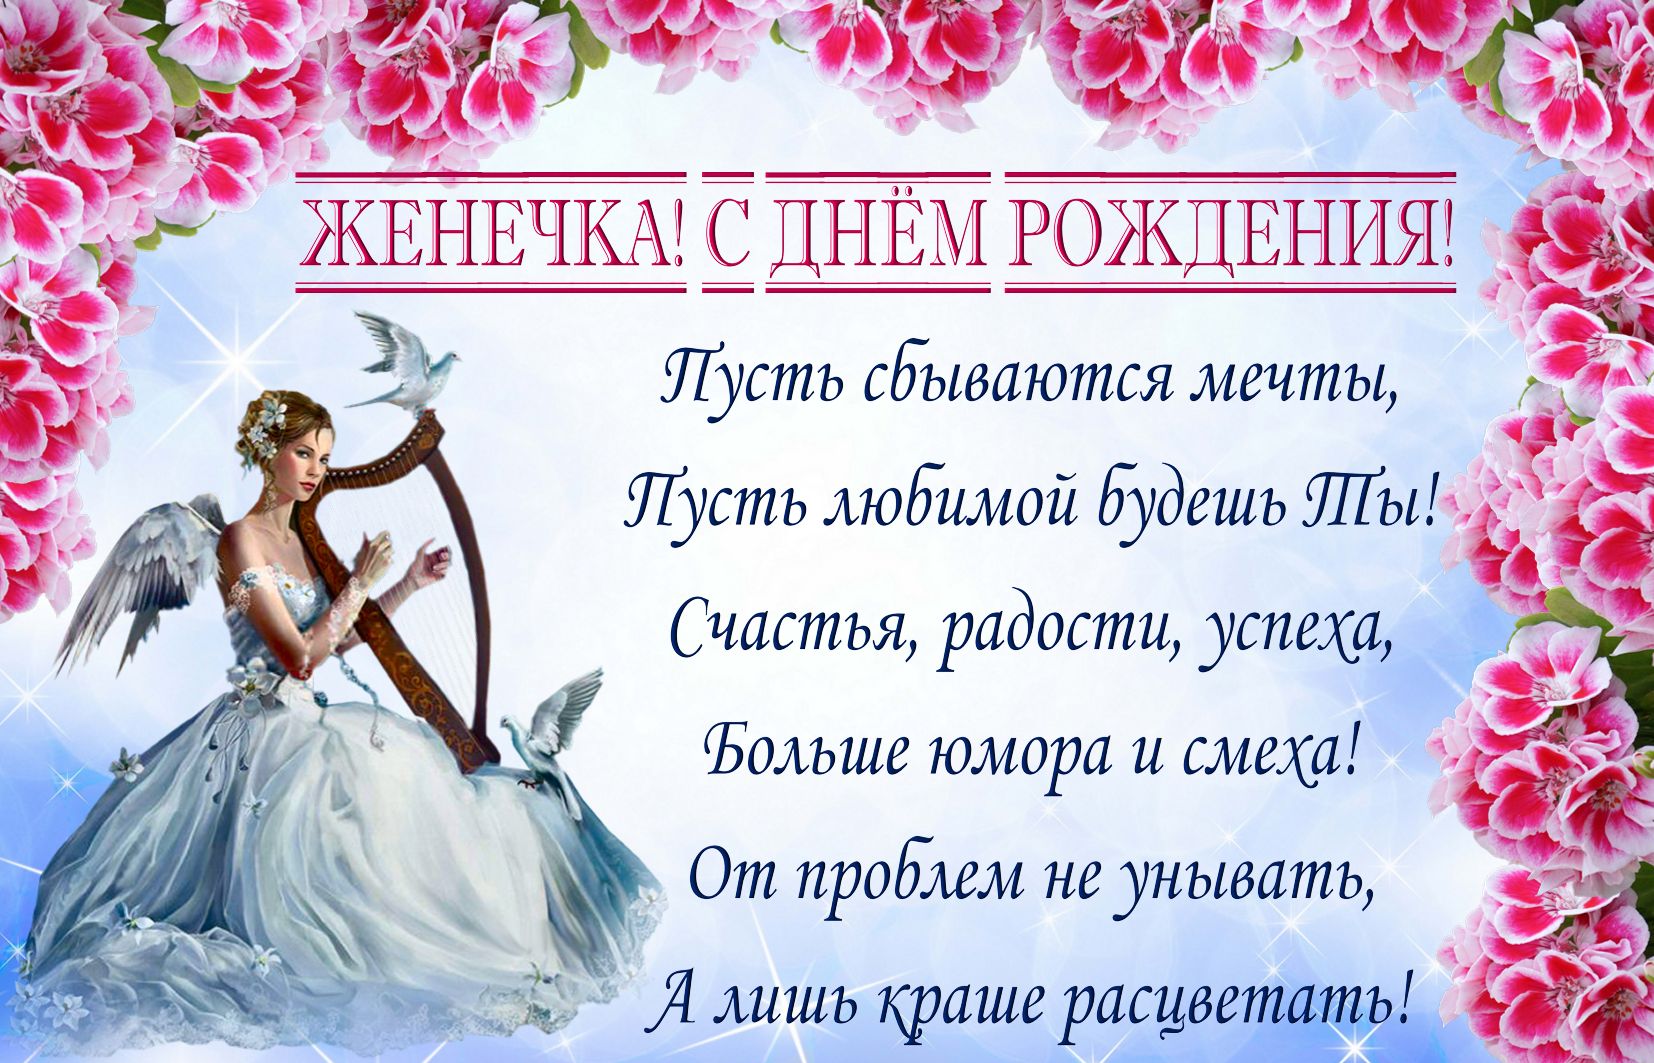 Открытка на День рождения Евгении - ангел с лирой и красивое пожелание